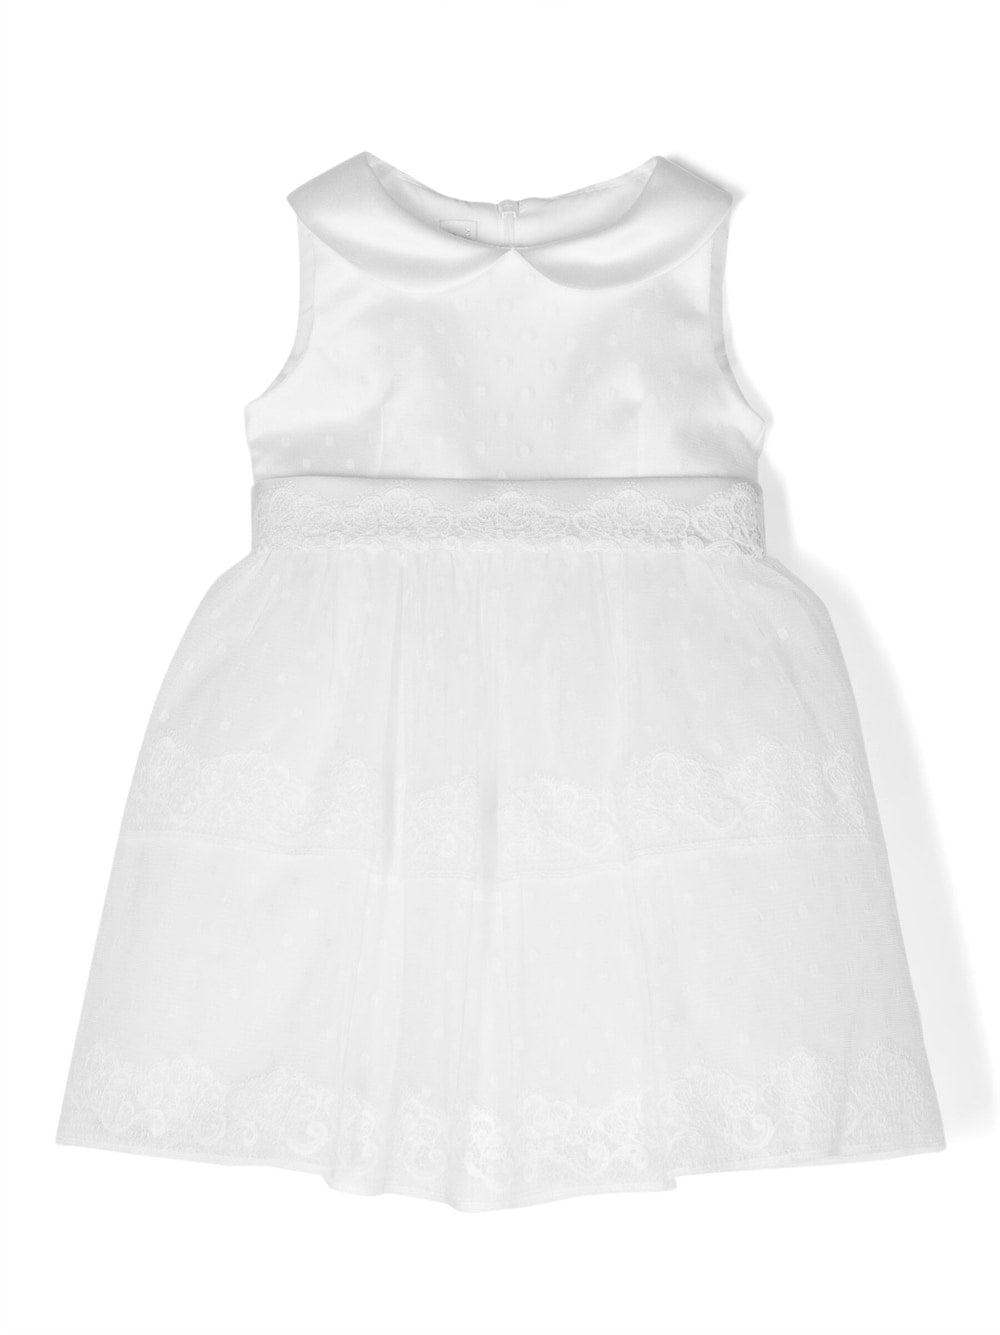 White dress for baby girl